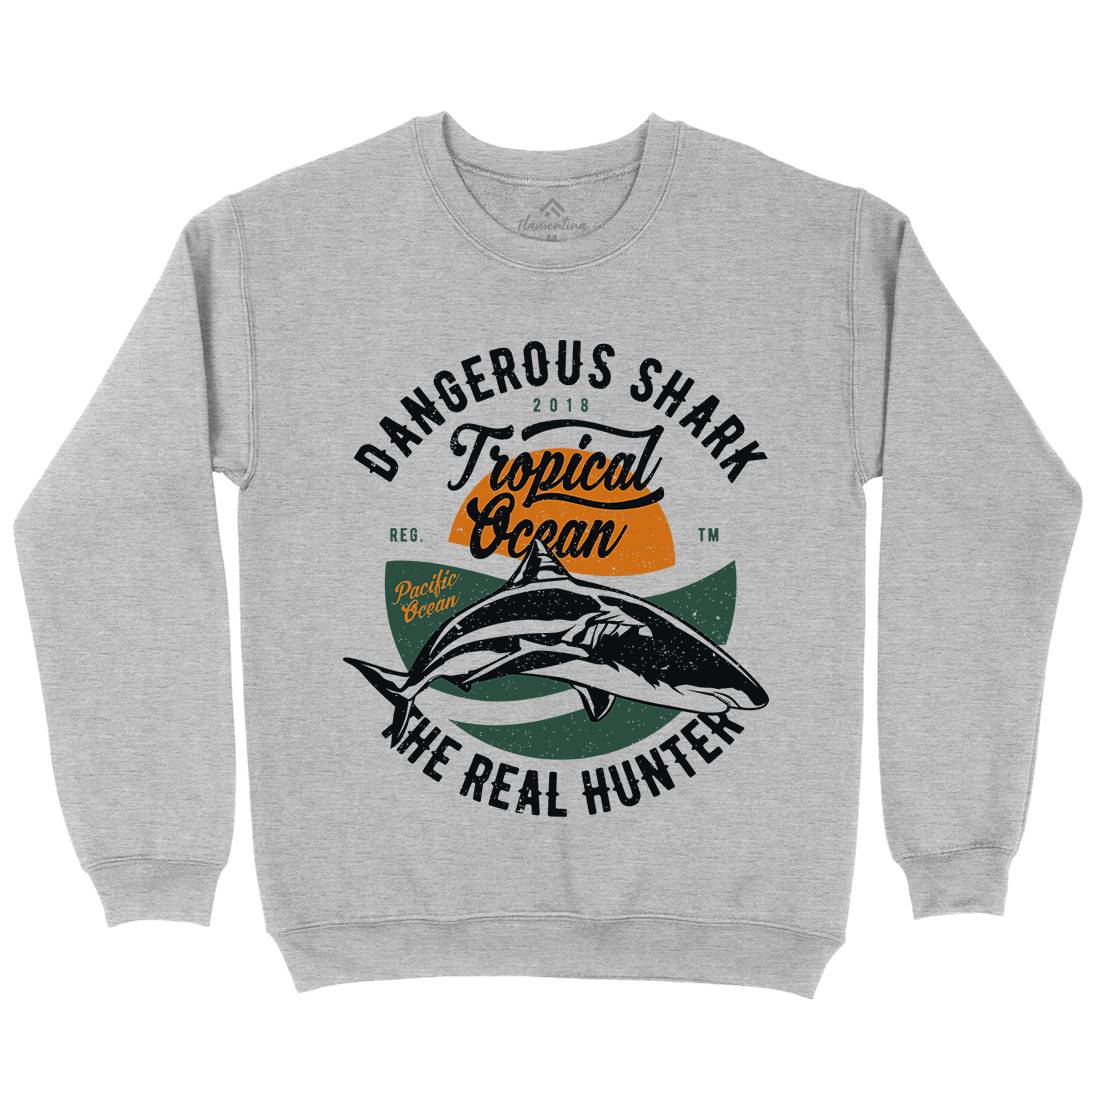 Dangerous Shark Kids Crew Neck Sweatshirt Navy A643